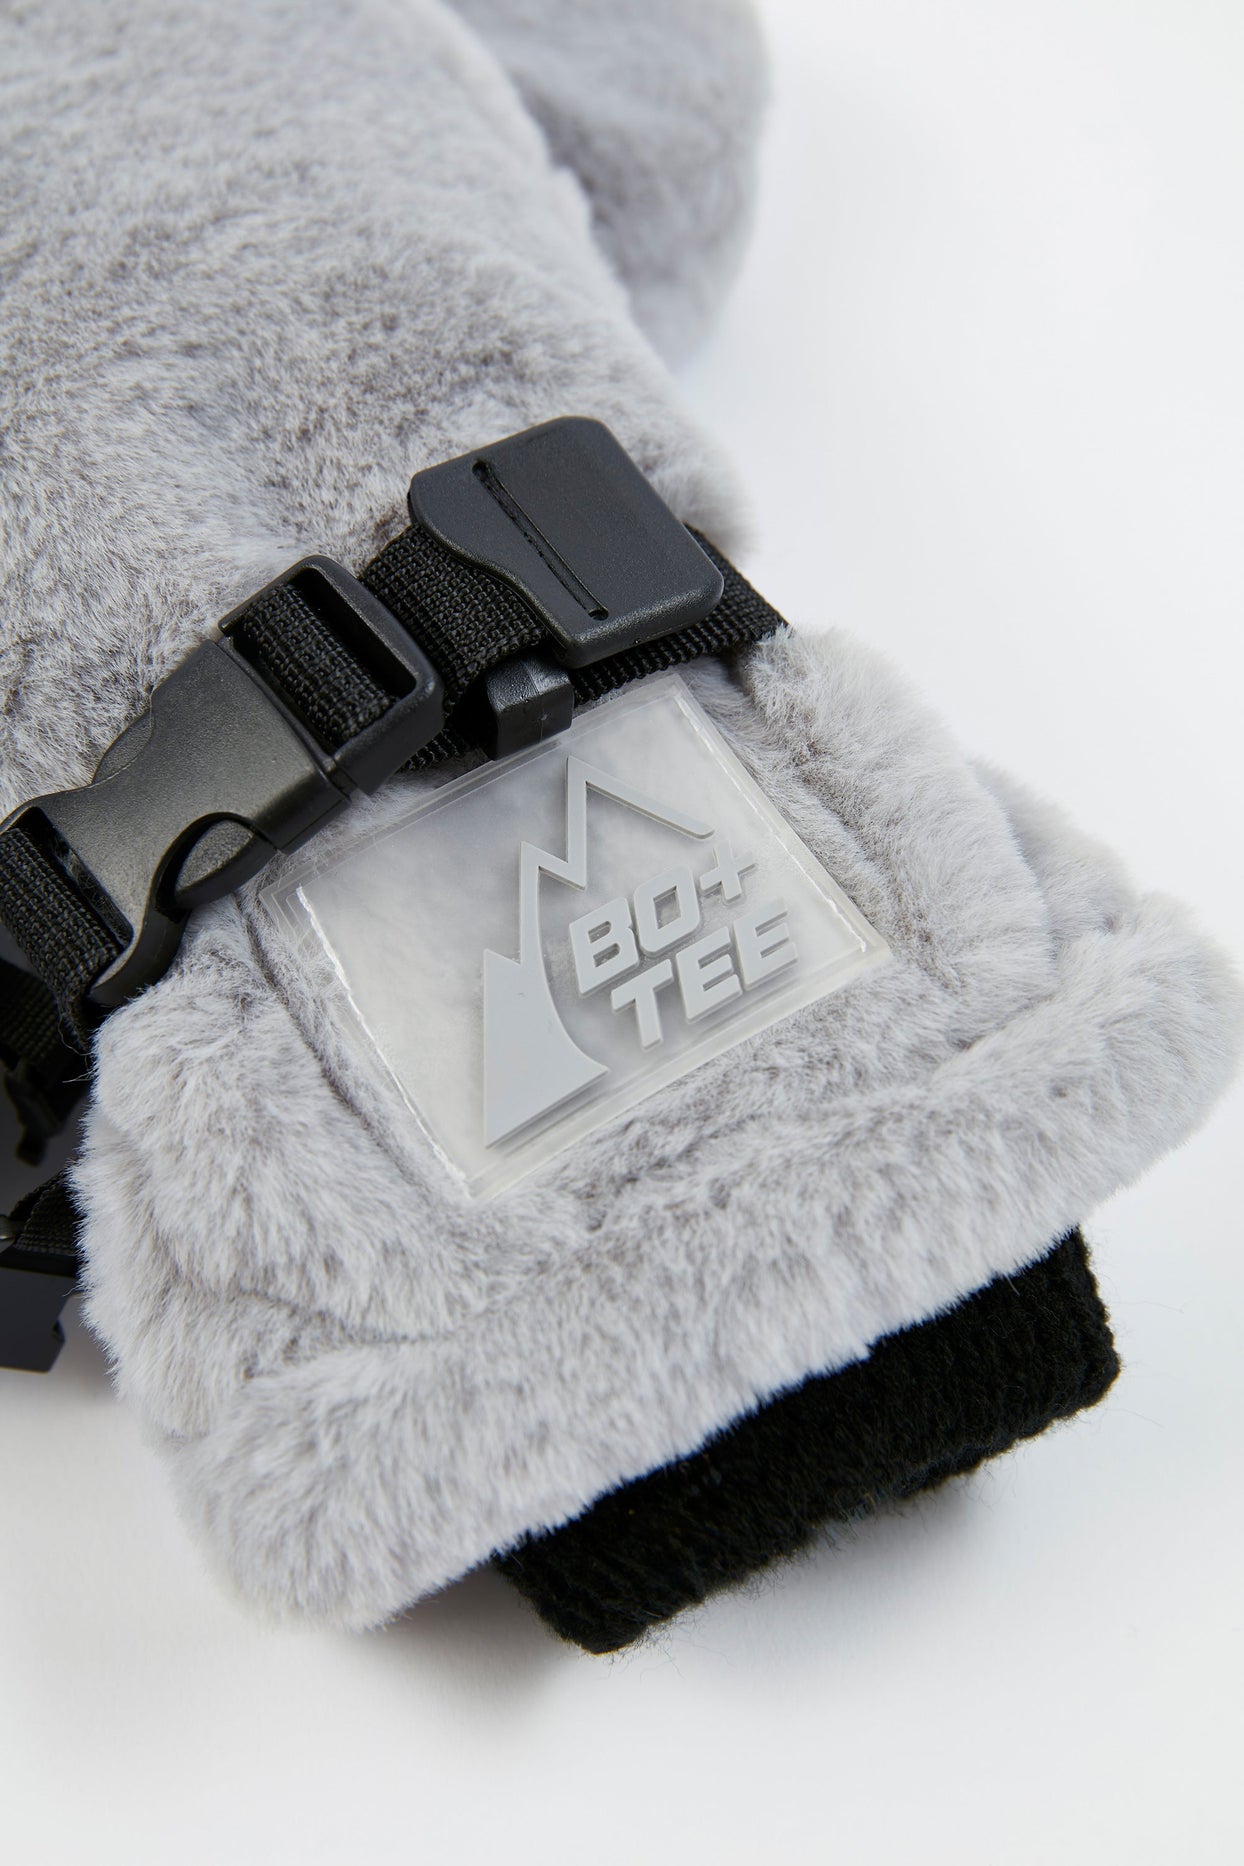 Ski Gloves in Light Grey